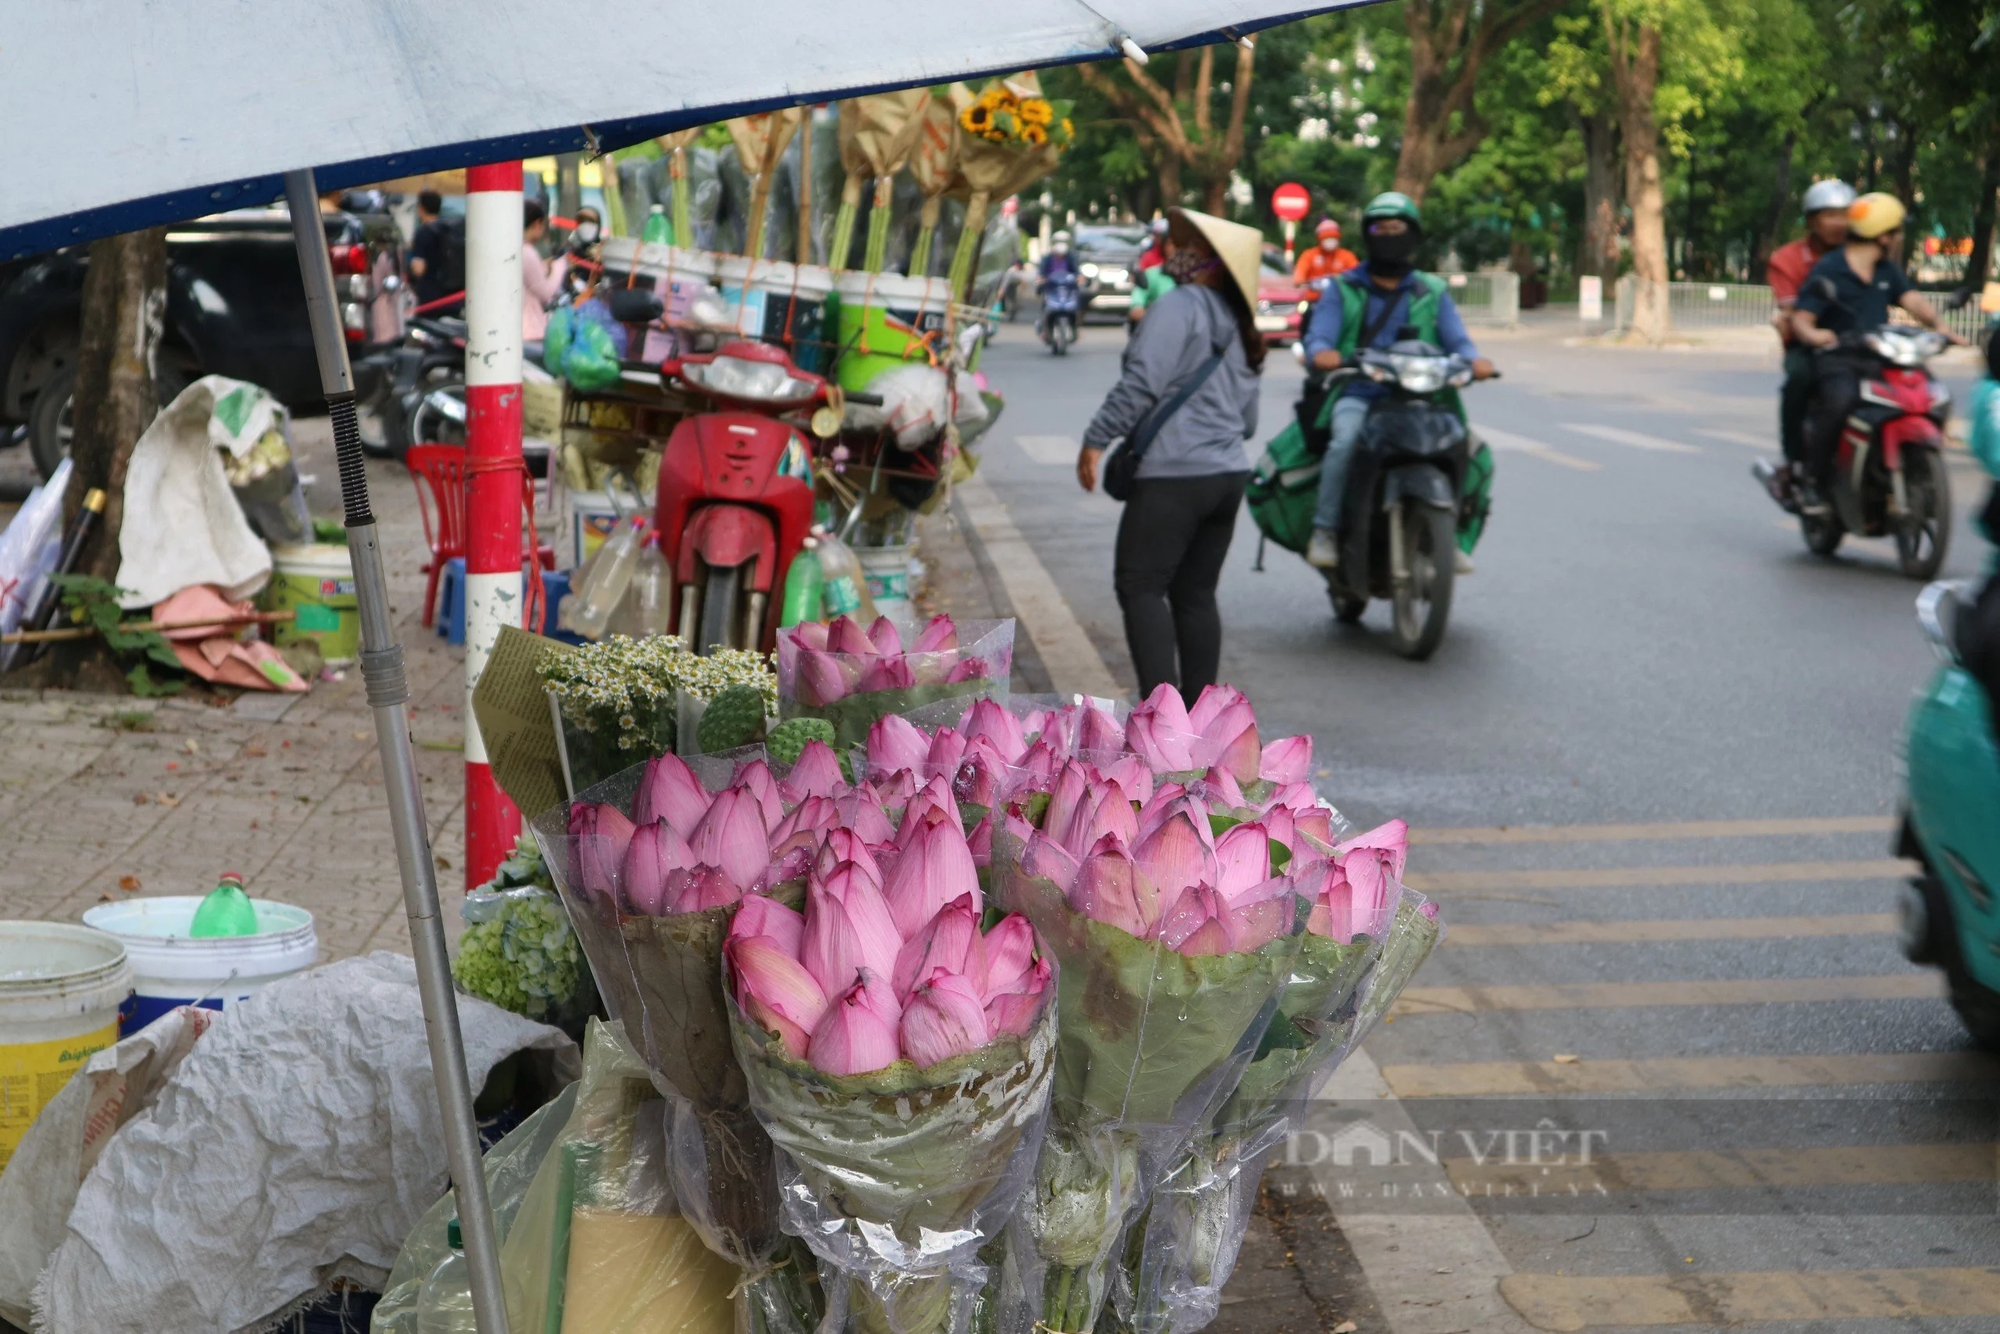 Sen đầu mùa nở rộ ở Hà Nội, tiểu thương chịu khó kiếm tiền mỗi ngày nhờ mang đi "hát rong"- Ảnh 1.